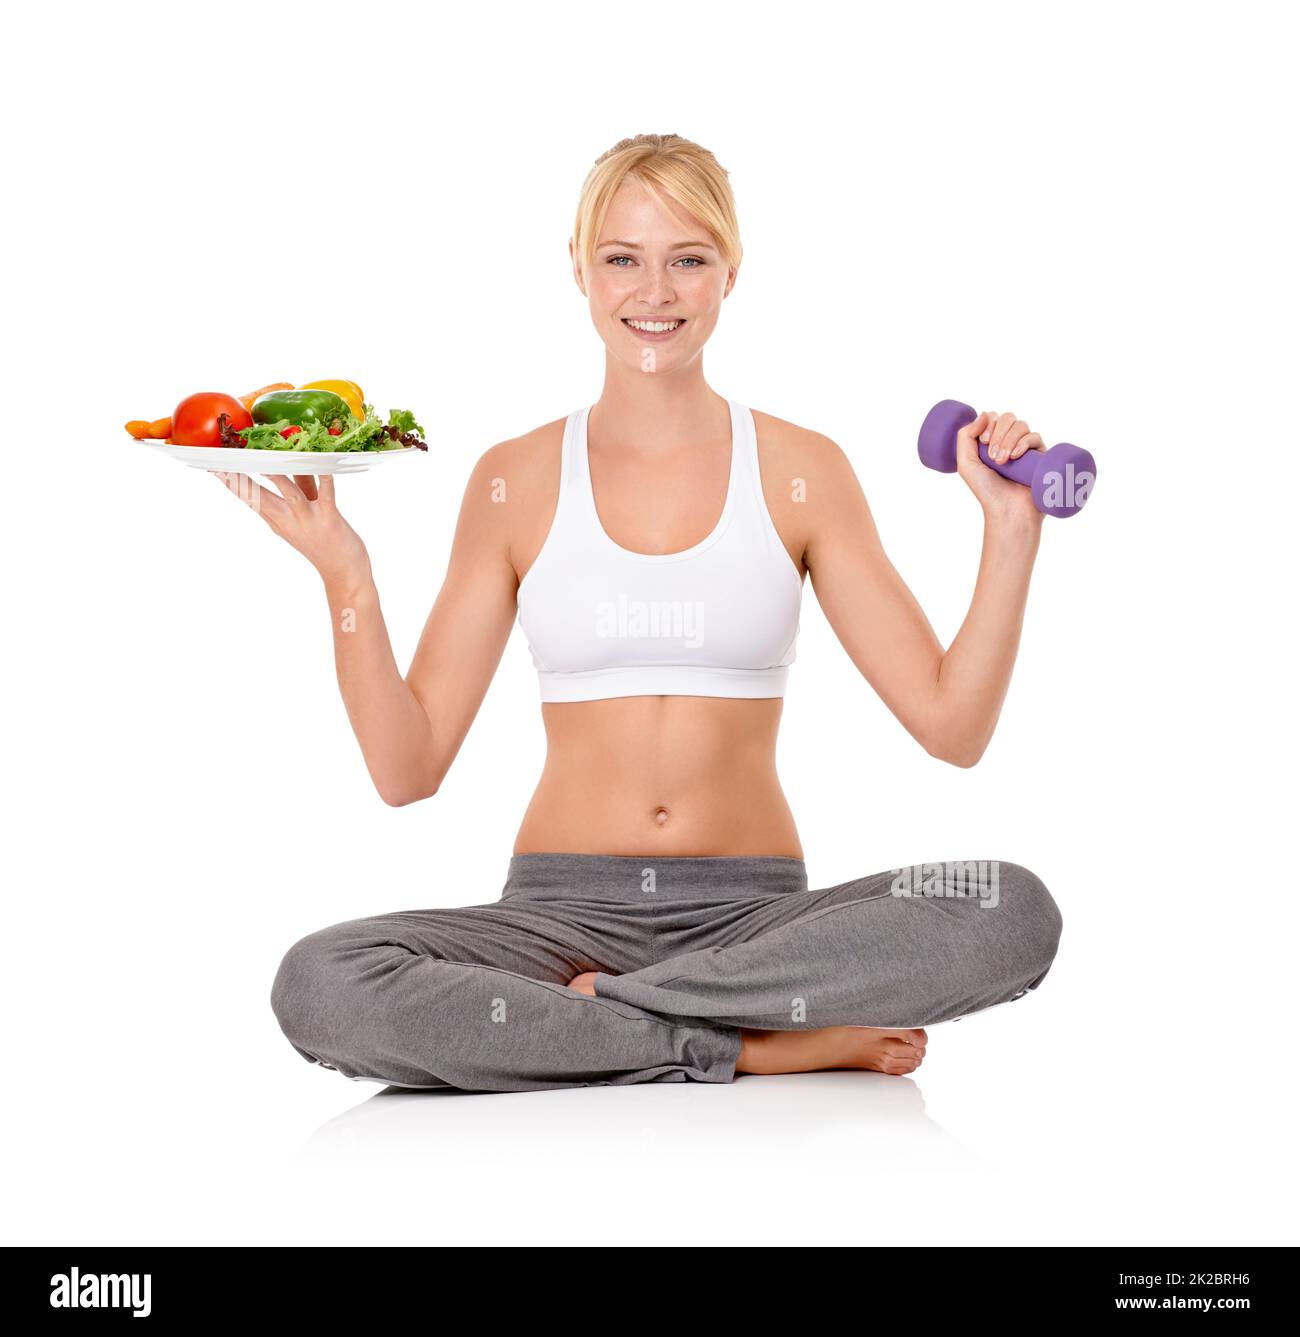 Bonne nourriture et exercice - la combinaison parfaite. Portrait d'une belle jeune femme tenant une salade dans une main et une haltère dans l'autre. Banque D'Images